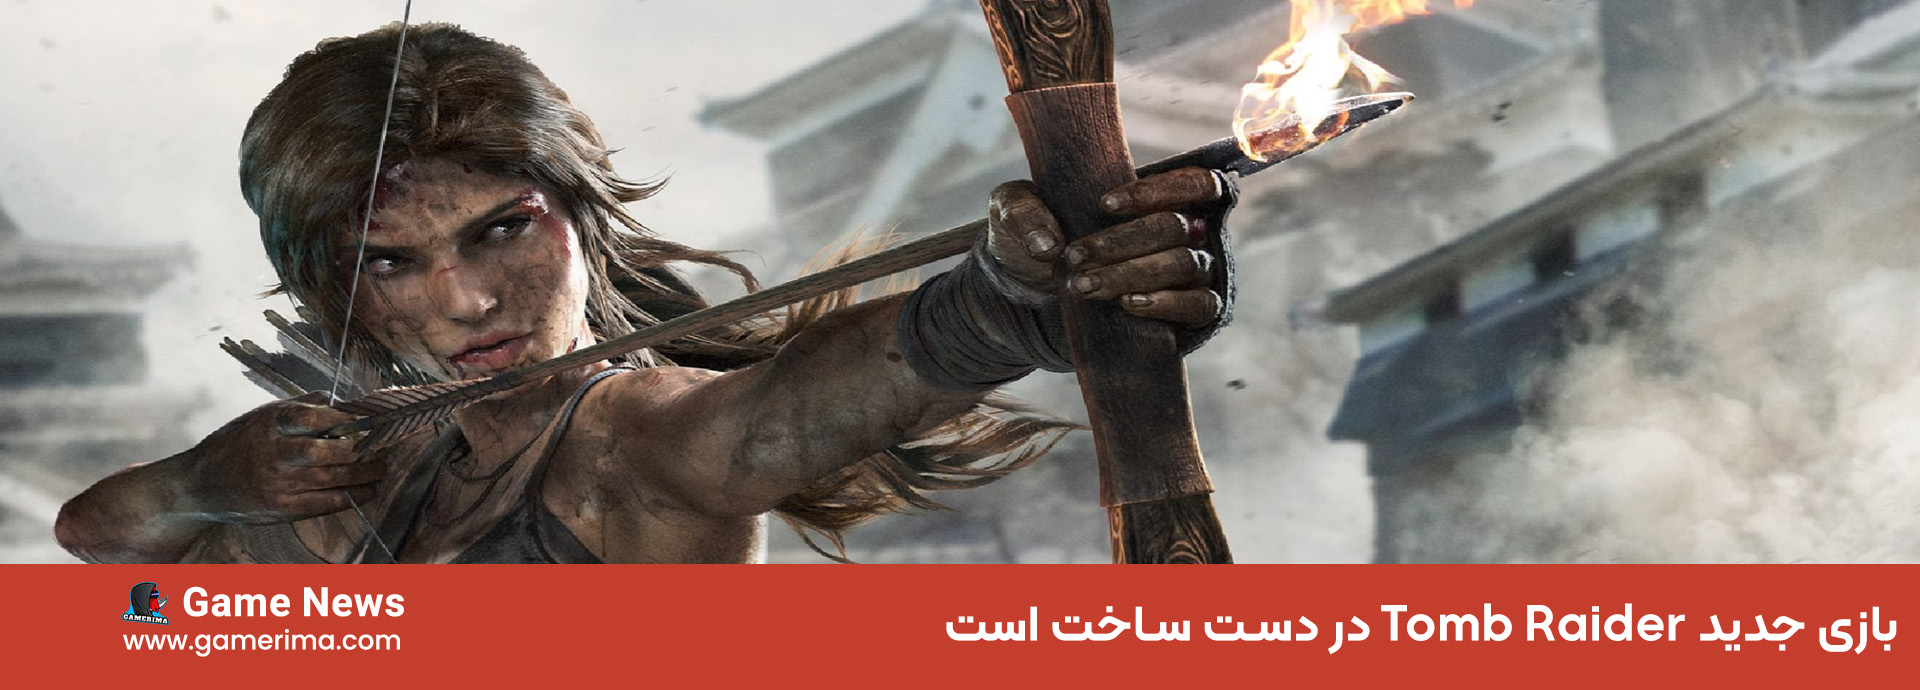 بازی جدید Tomb Raider در دست ساخت است